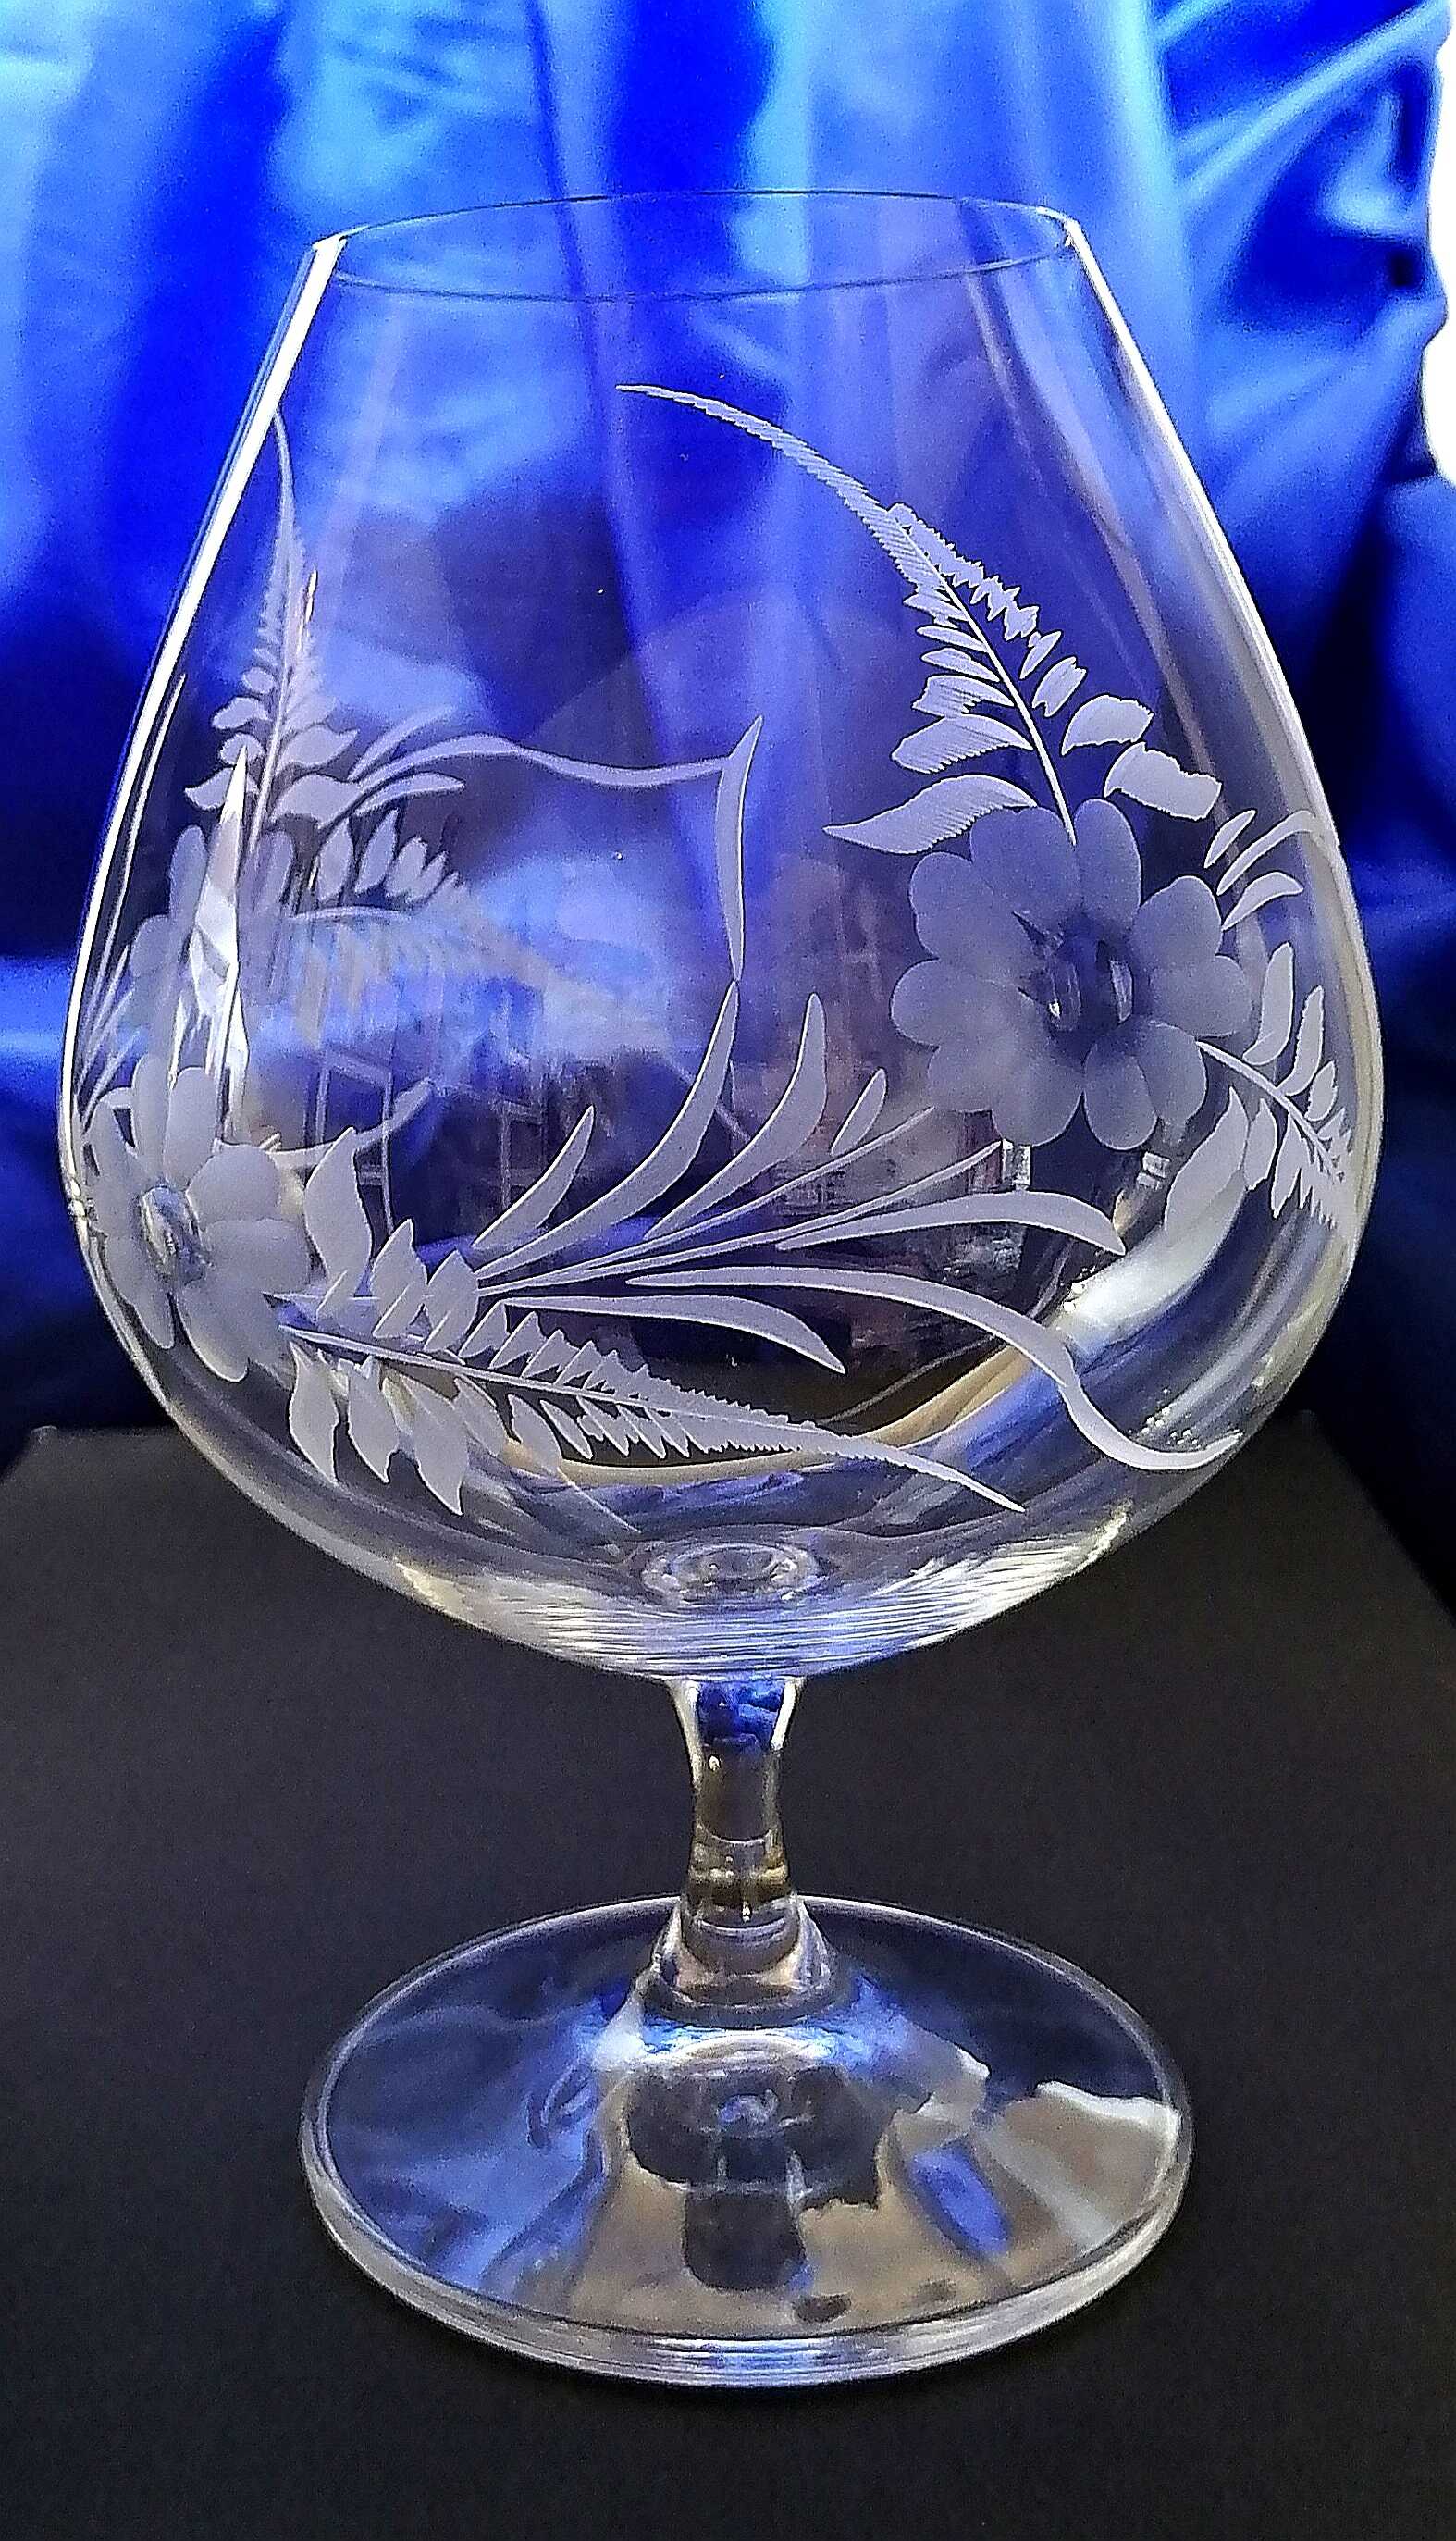 LsG-Crystal Jubilejka sklenička číše broušená dekor květina J-956 880 ml 1 Ks.